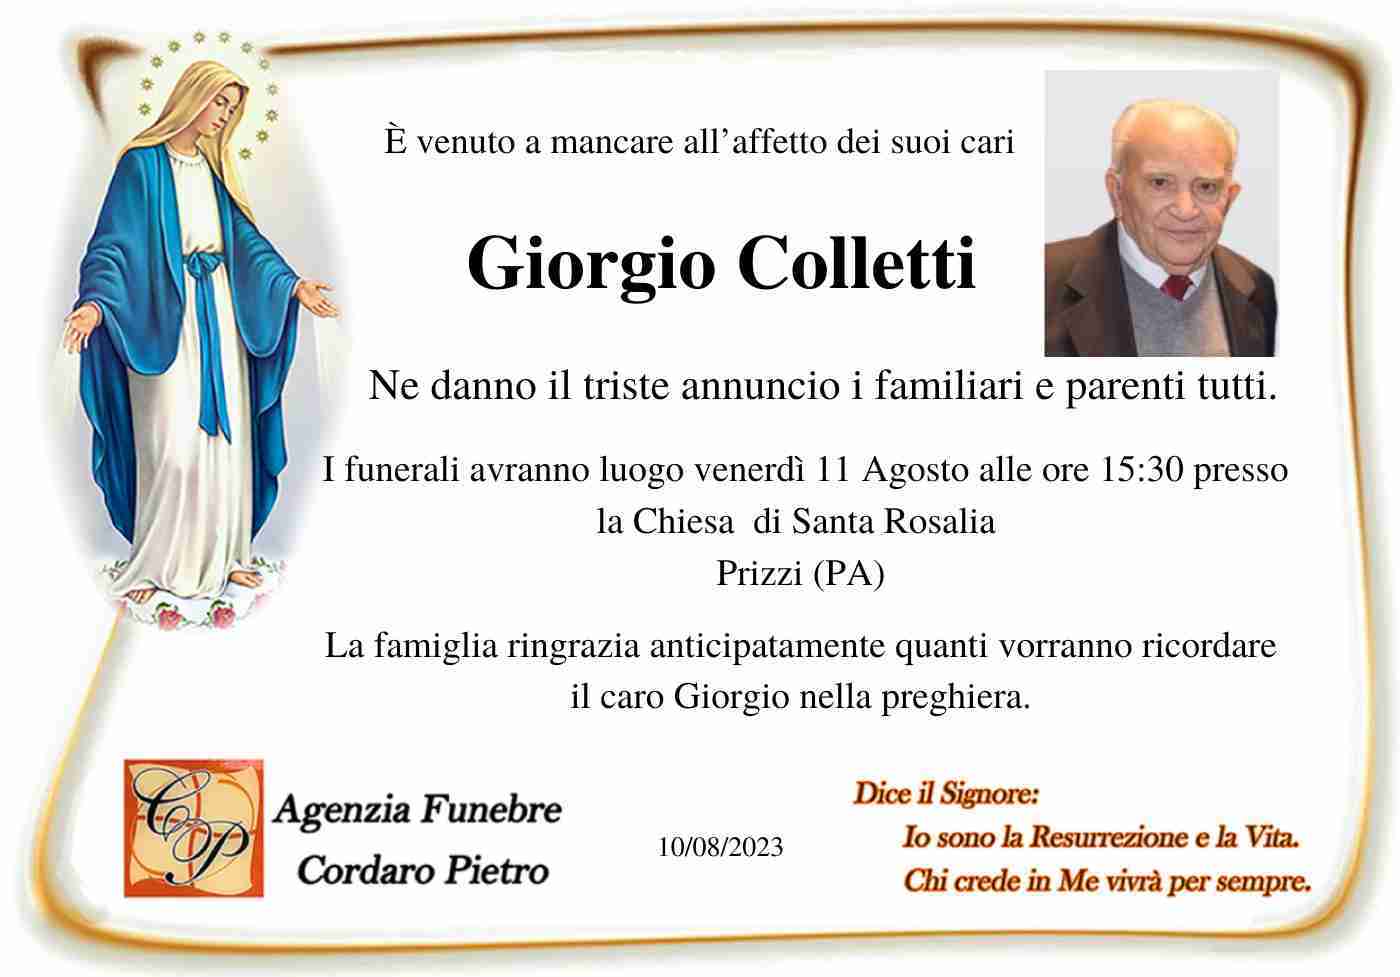 Giorgio Colletti